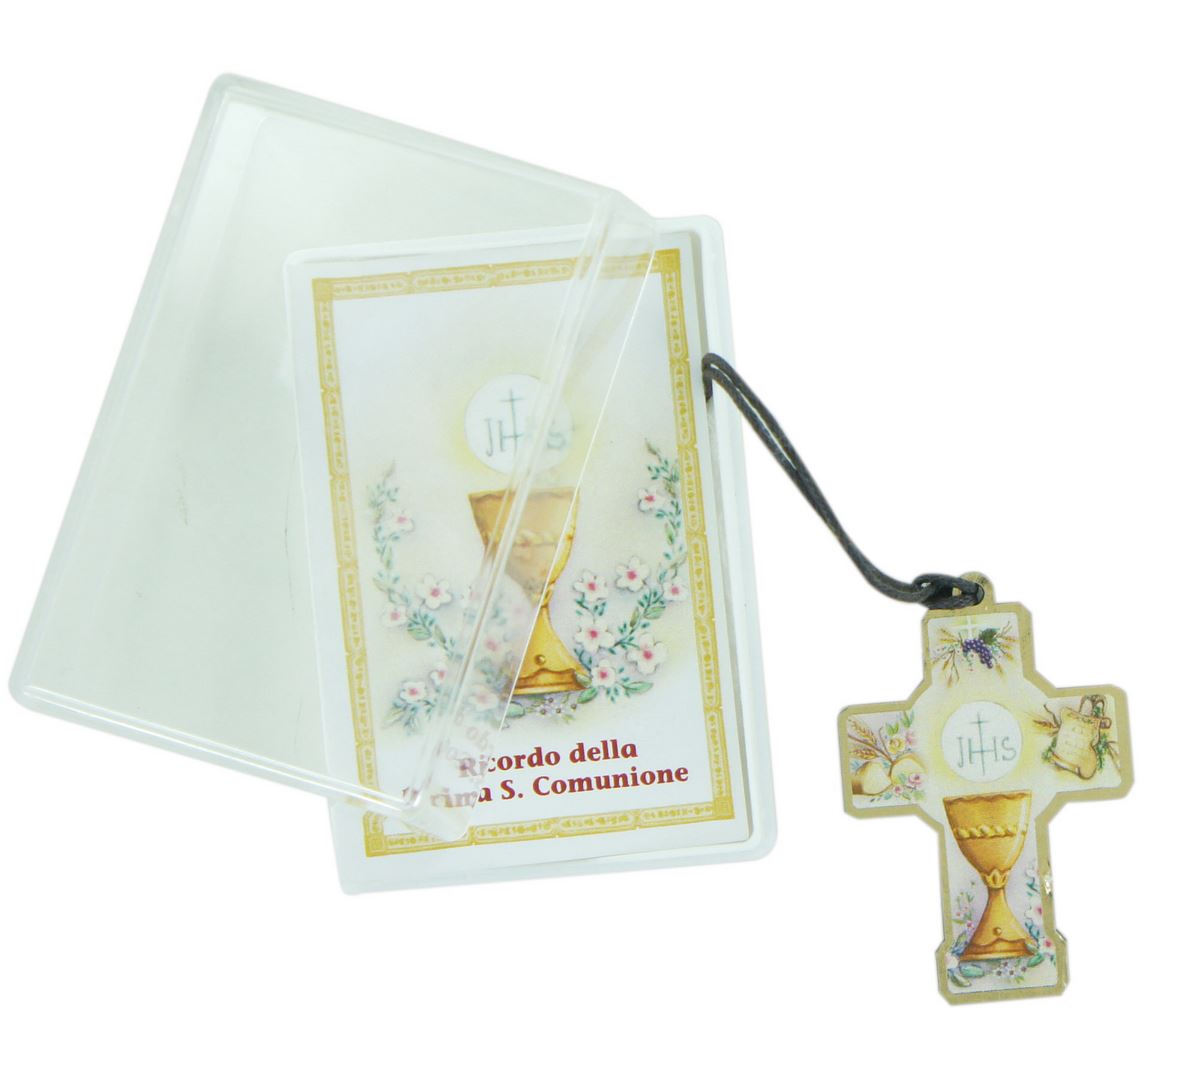 bomboniera comunione bambino/bambina: croce in legno con scatola in italiano - 3,5 cm